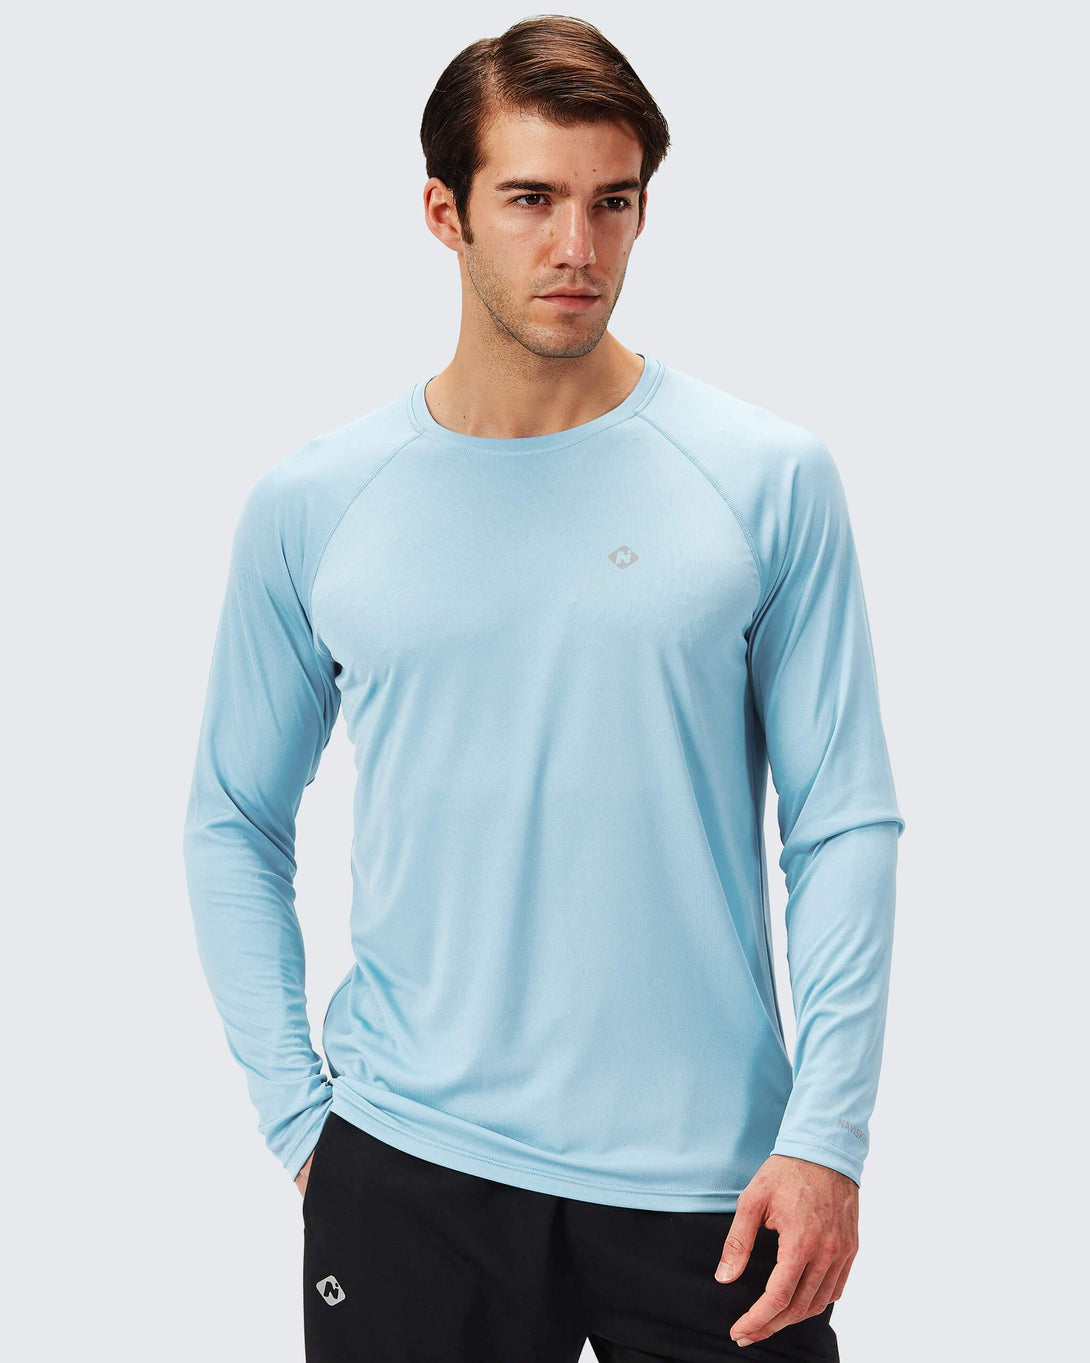 Camiseta Softline Verde Aquamarine - Proteção Uva/uvb 50+ Fps - Cardume